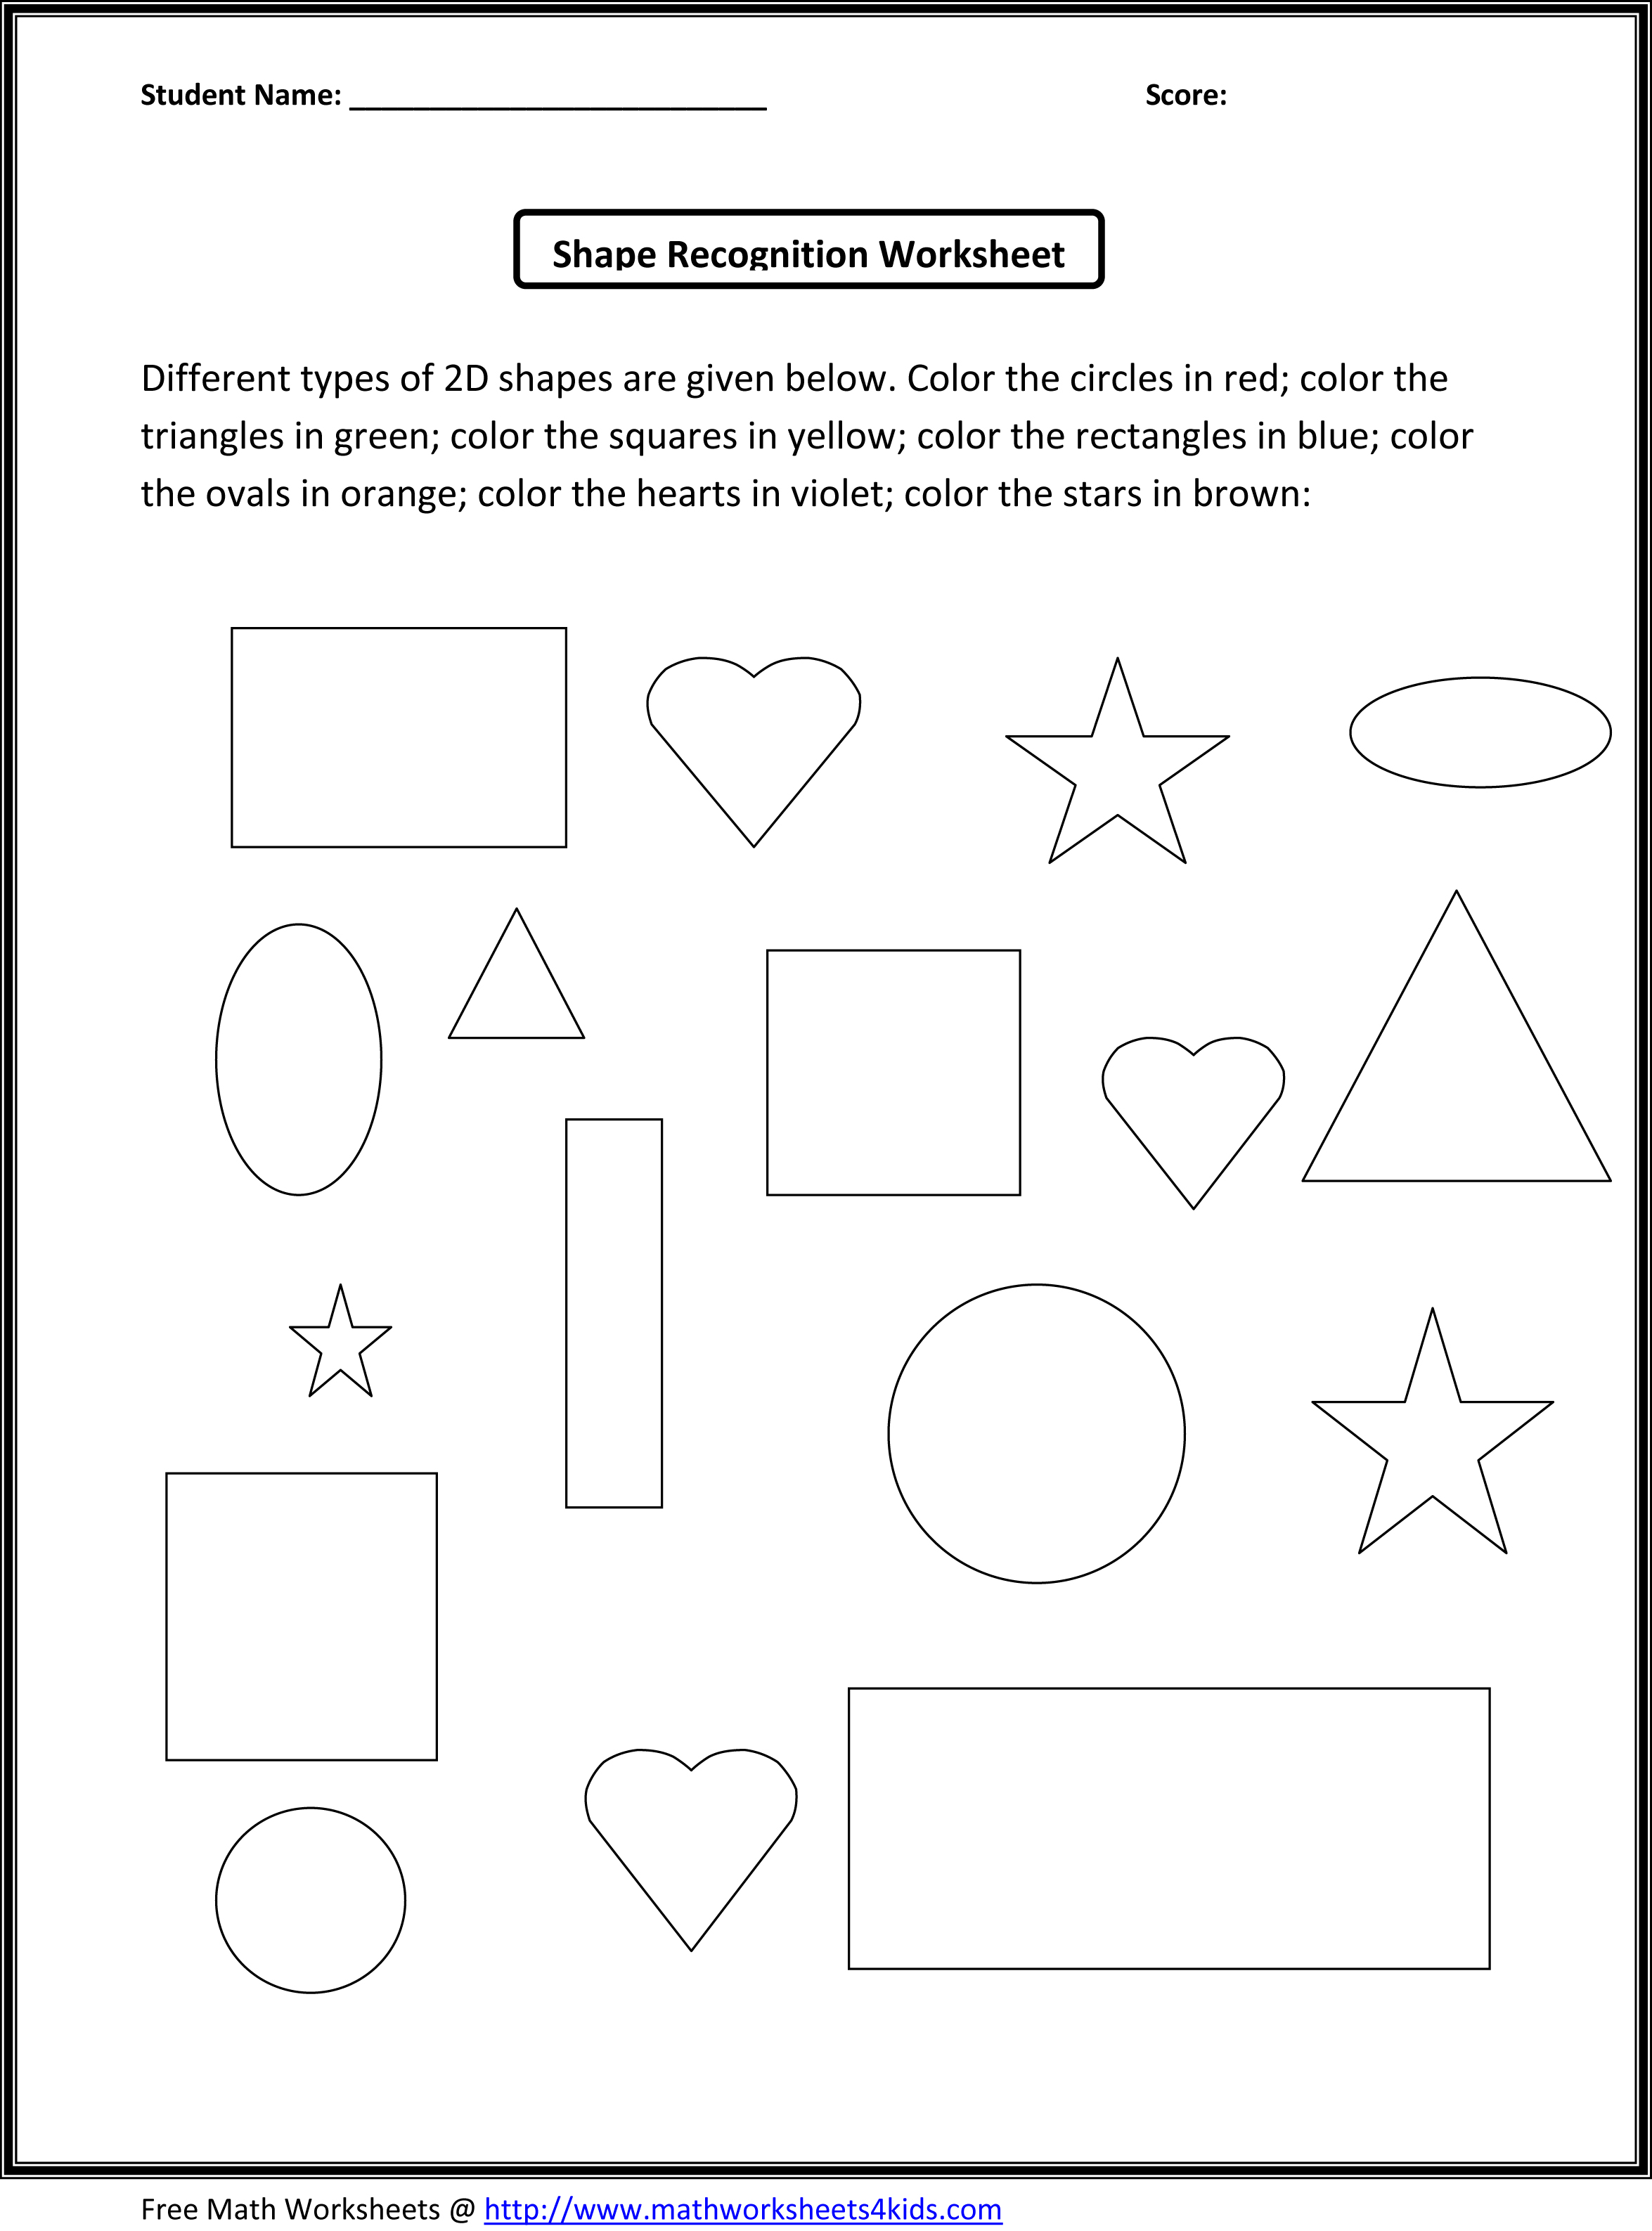 Kindergarten Math Shapes Worksheets Image